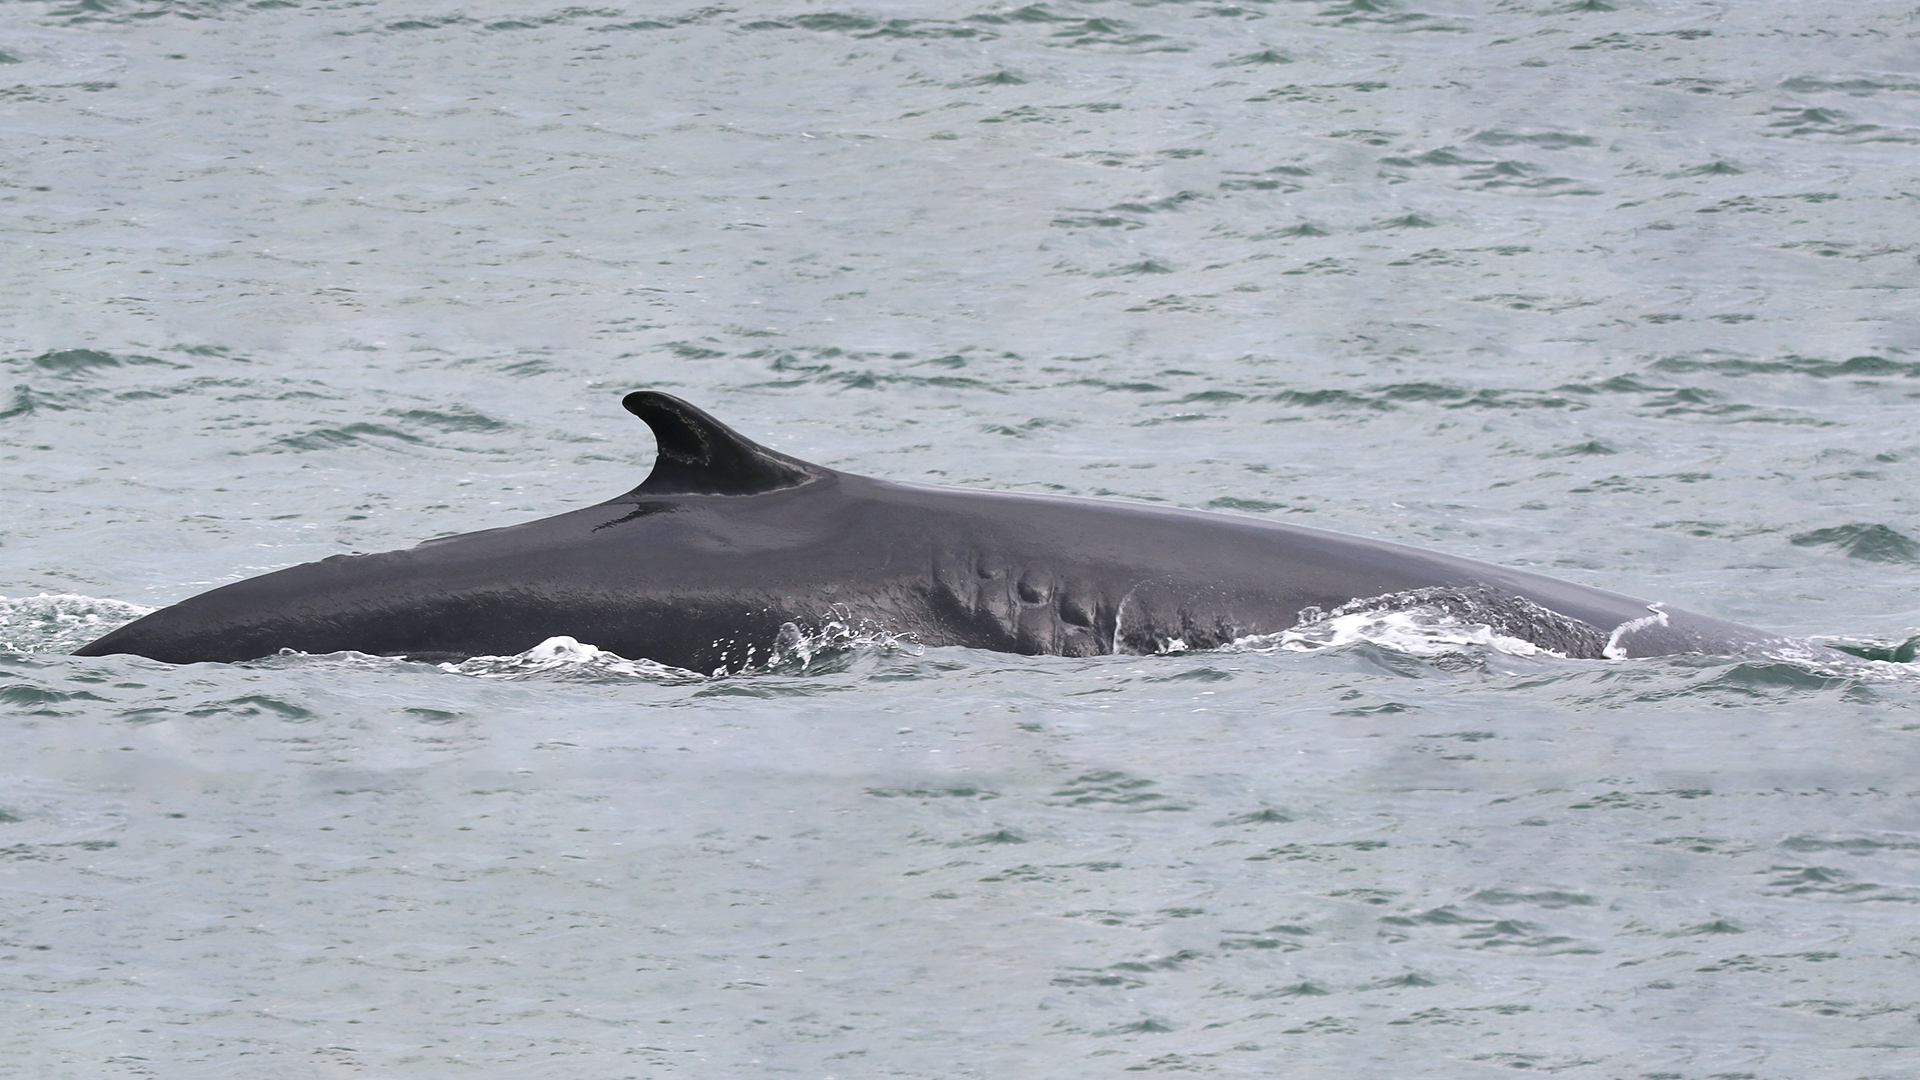 Dos d’un rorqual commun avec sa nageoire dorsale. On voit une cicatrice en forme de fermeture éclair sur le flanc droit de la baleine. 